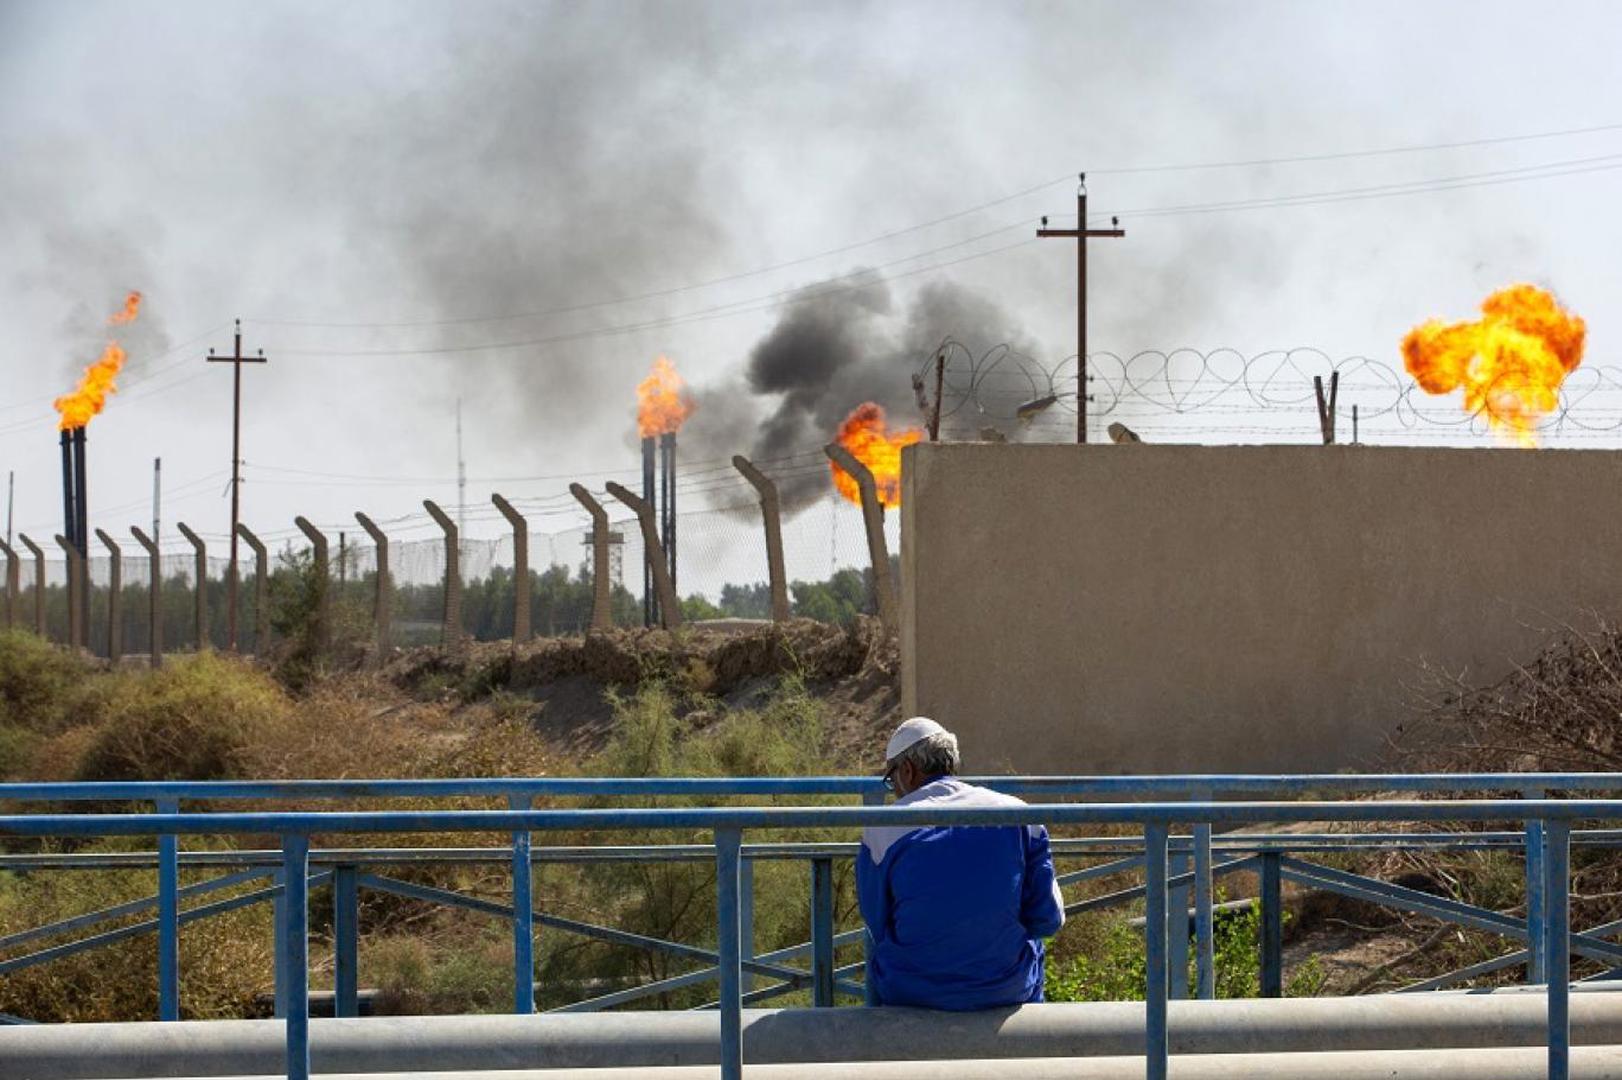 العراق.. تقدم كبير في ملف وقف حرق الغاز المصاحب